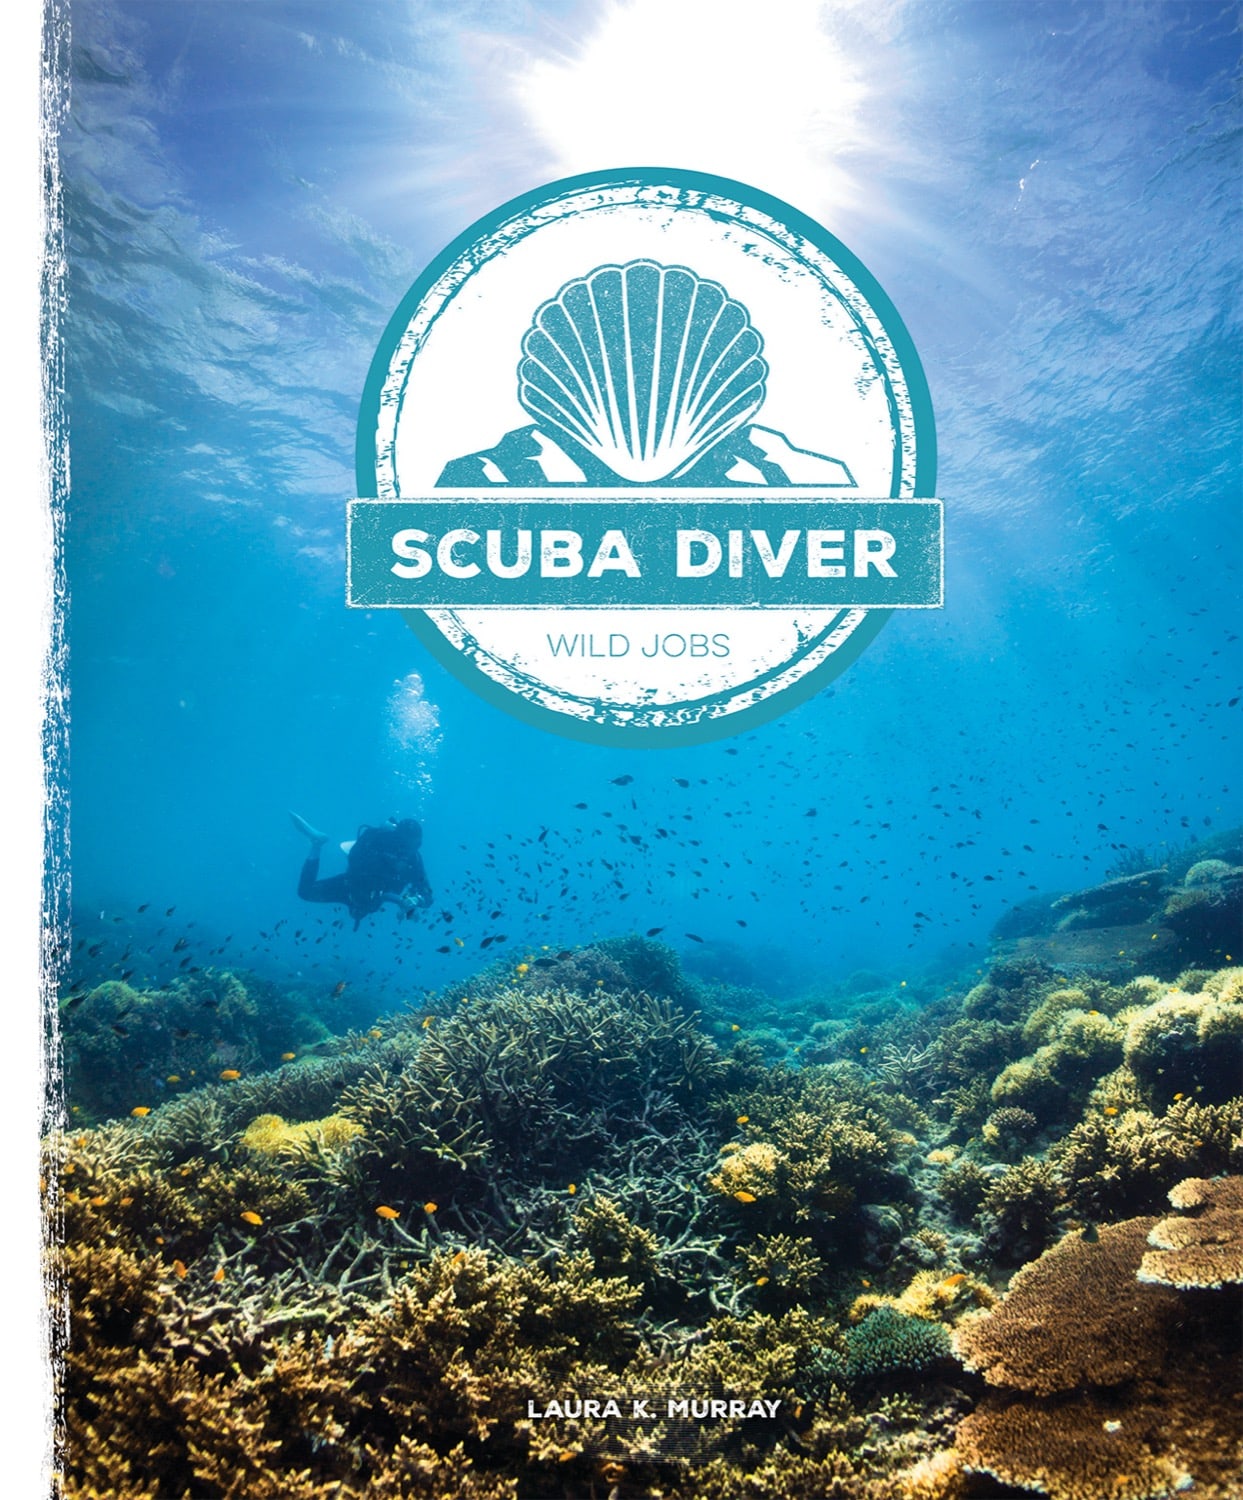 Wild Jobs: Scuba Diver